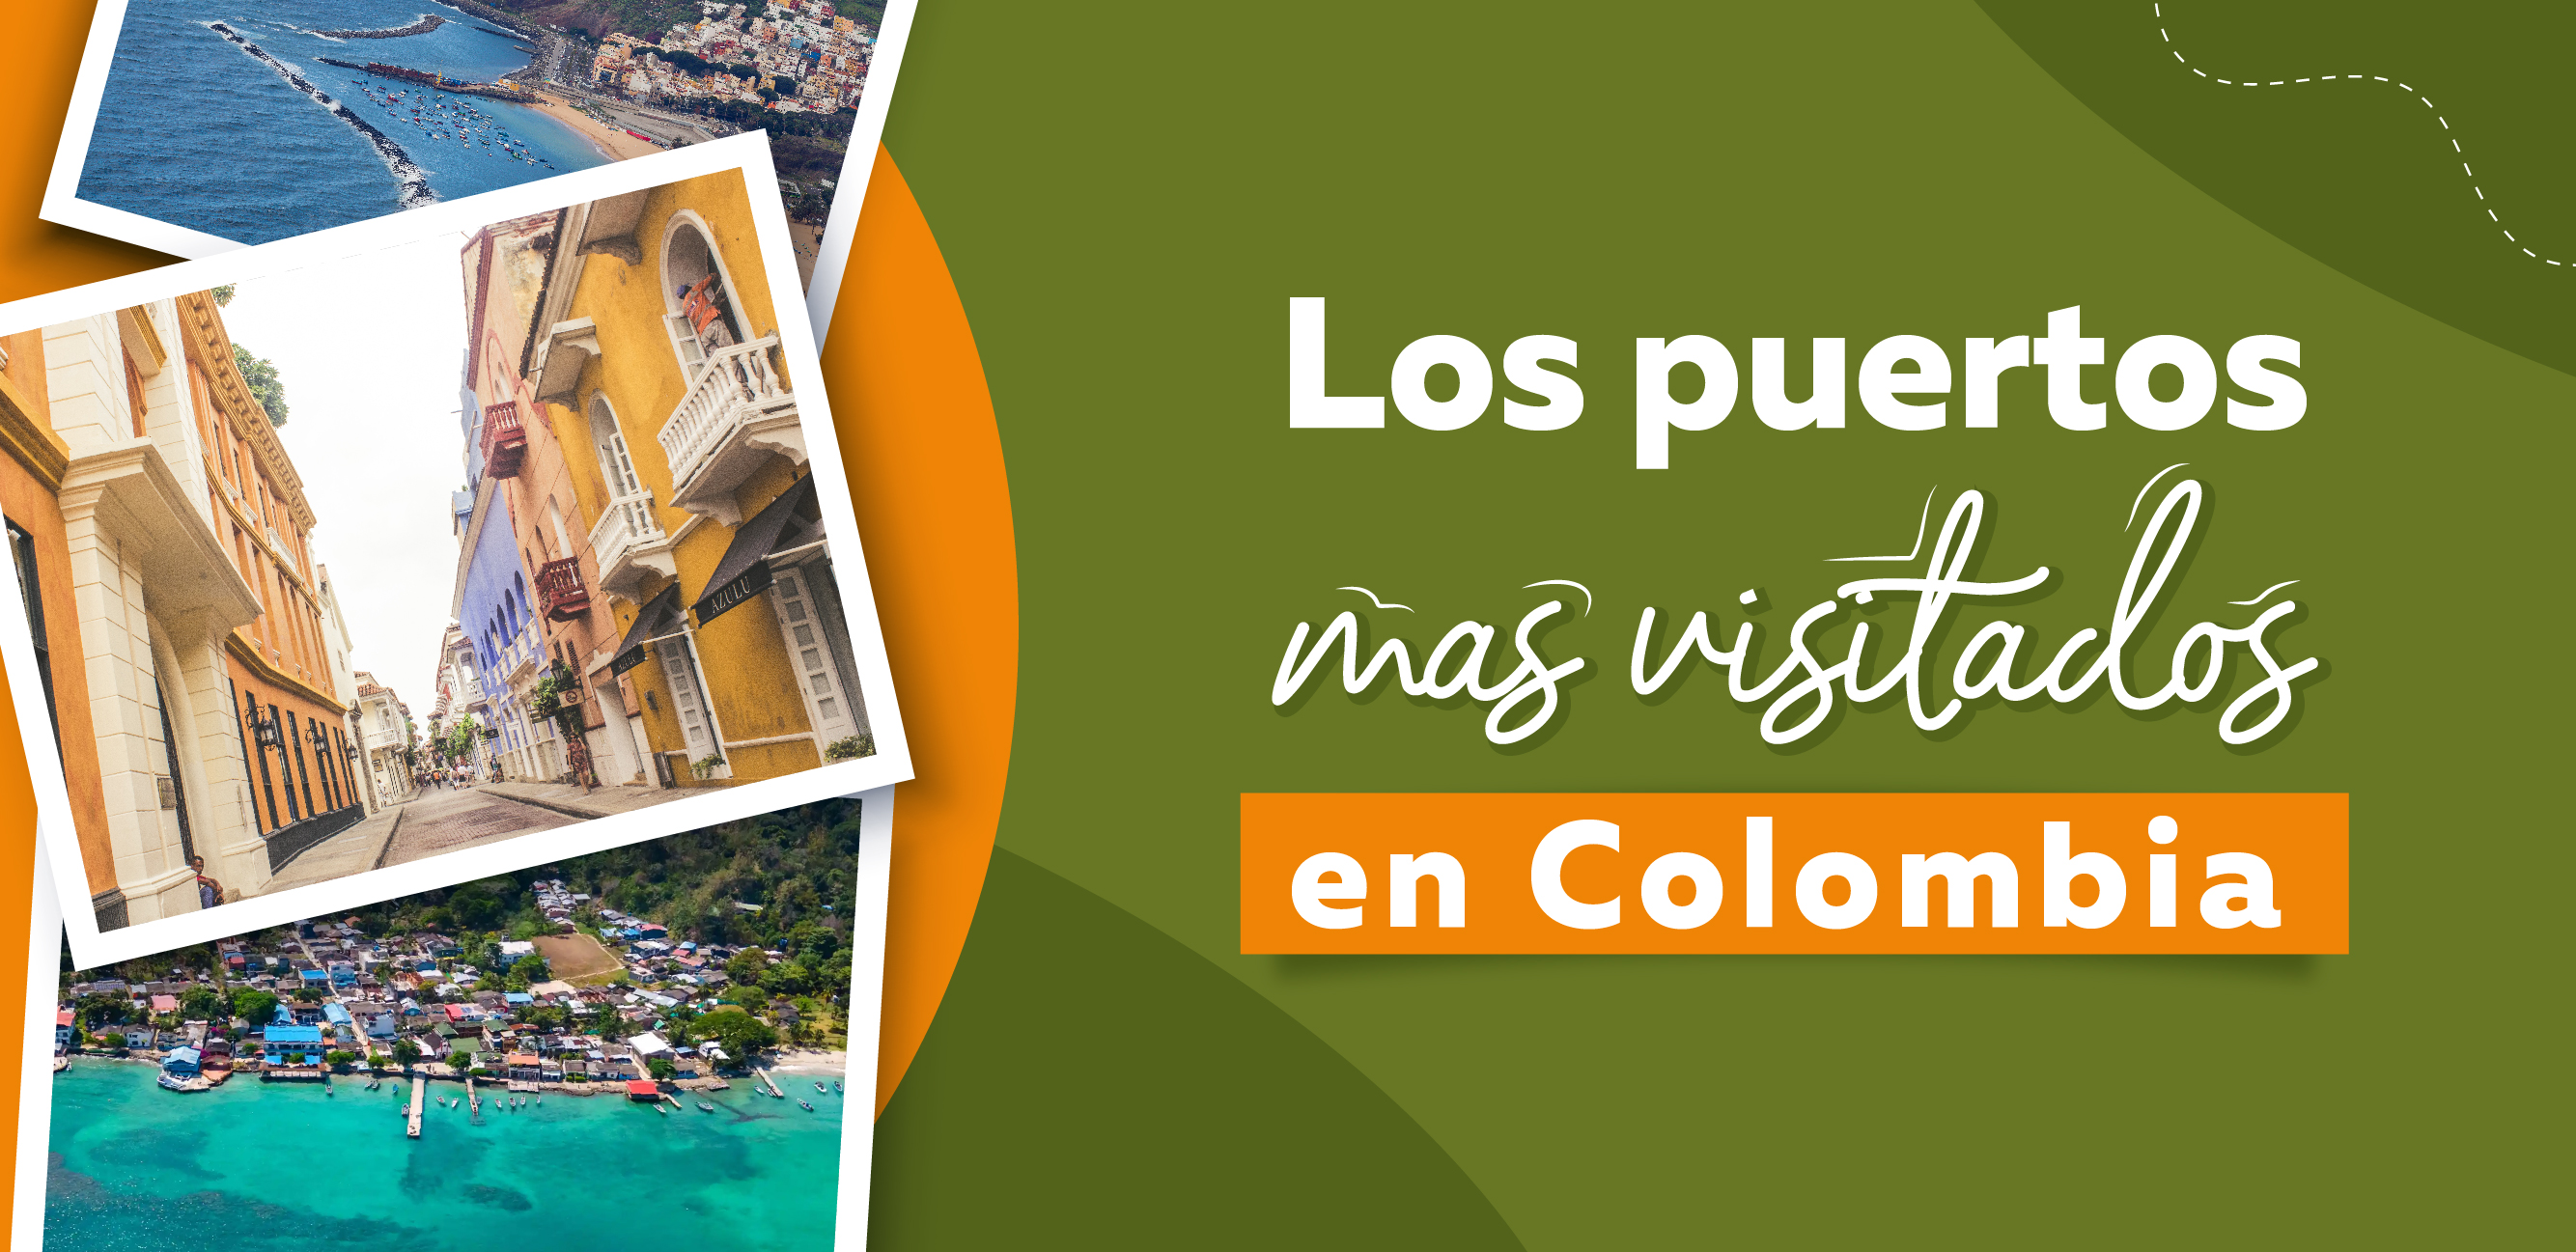 El Encanto de los Puertos Colombianos: ¿Conoces Estos Destinos imperdible?